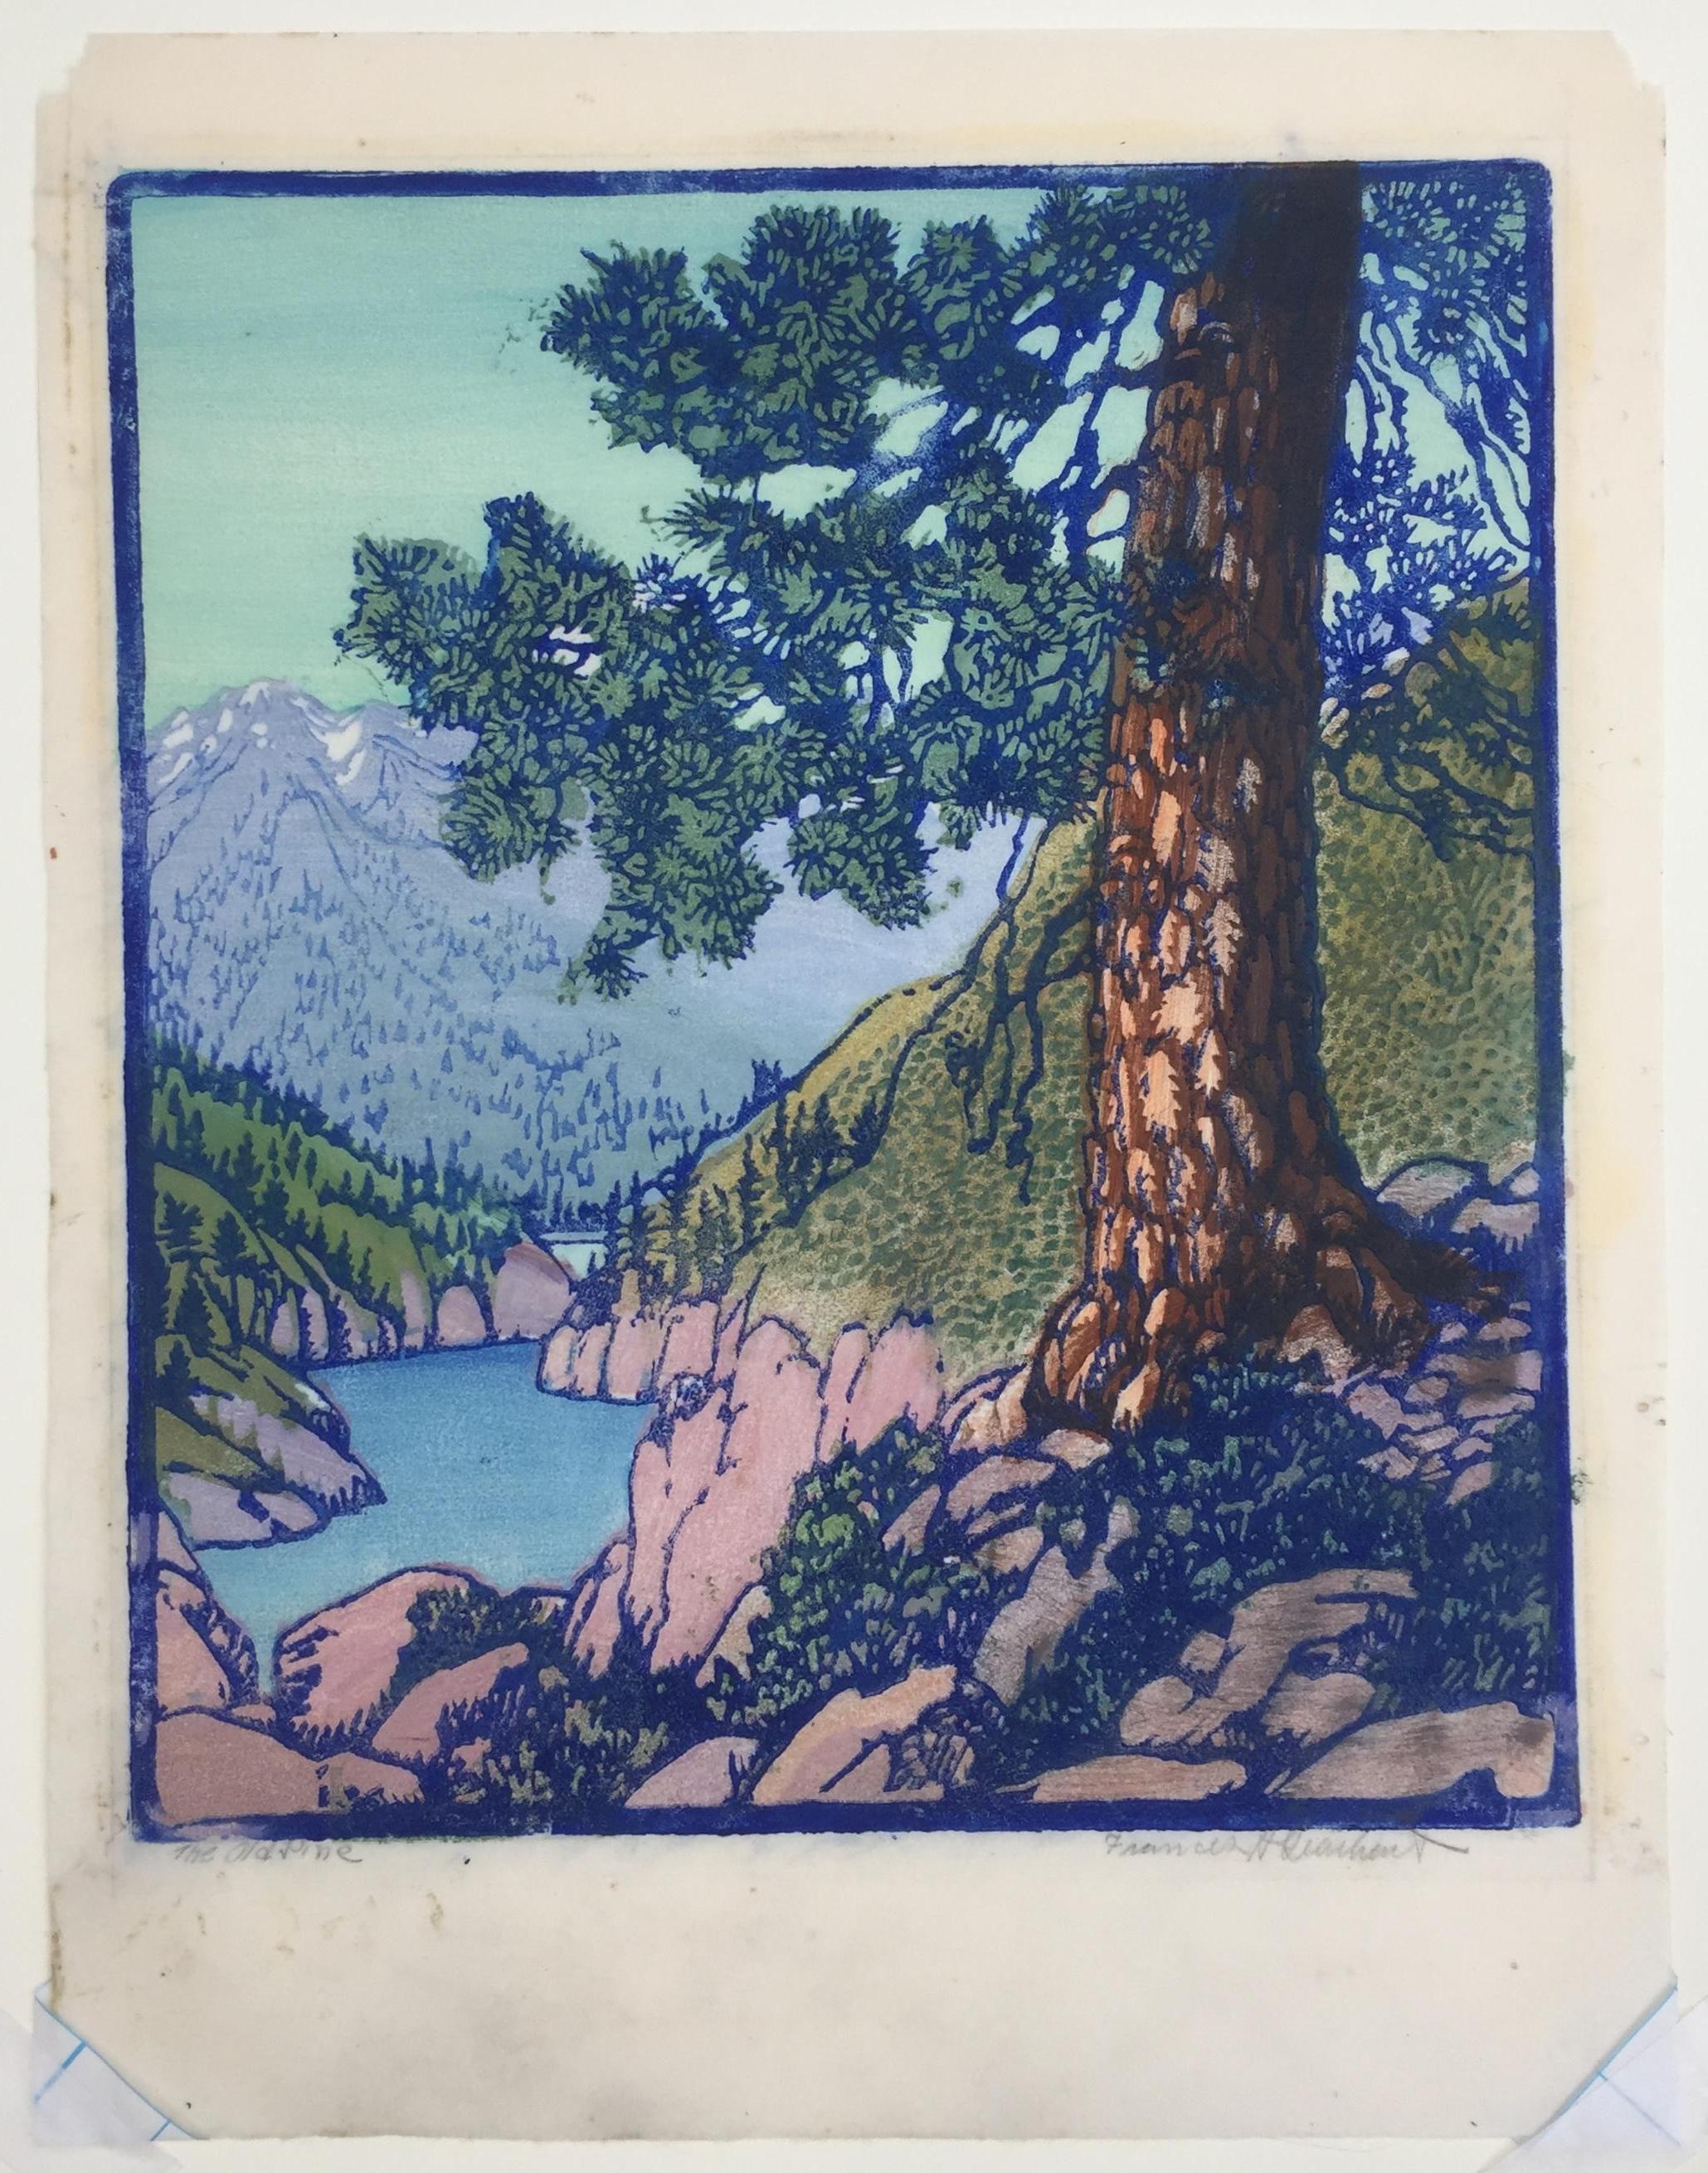 THE OLD PINE – sehr gutes, großformatiges Werk eines Meisters des Farbblockdrucks (Grau), Landscape Print, von Frances H. Gearhart